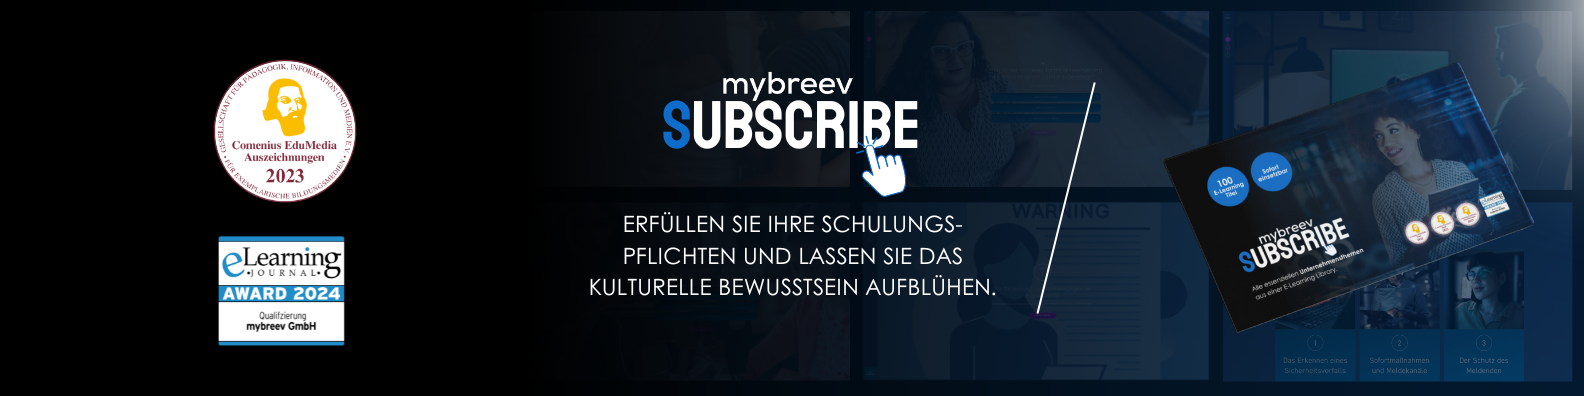 mybreev.com